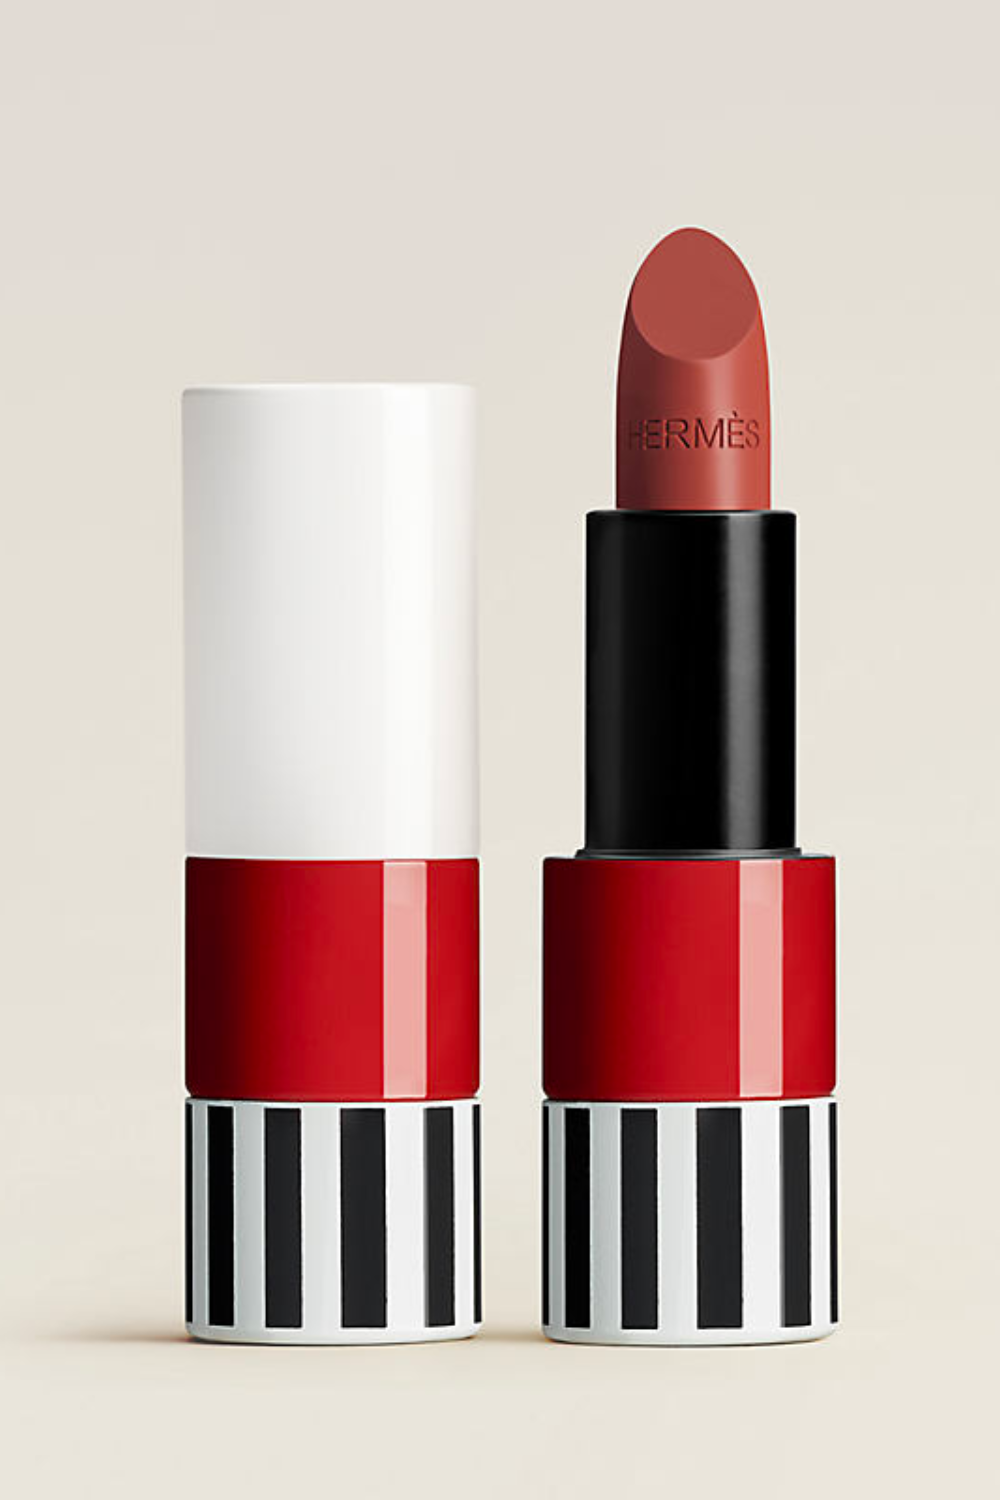 Hermes-Rogue-Lipstick